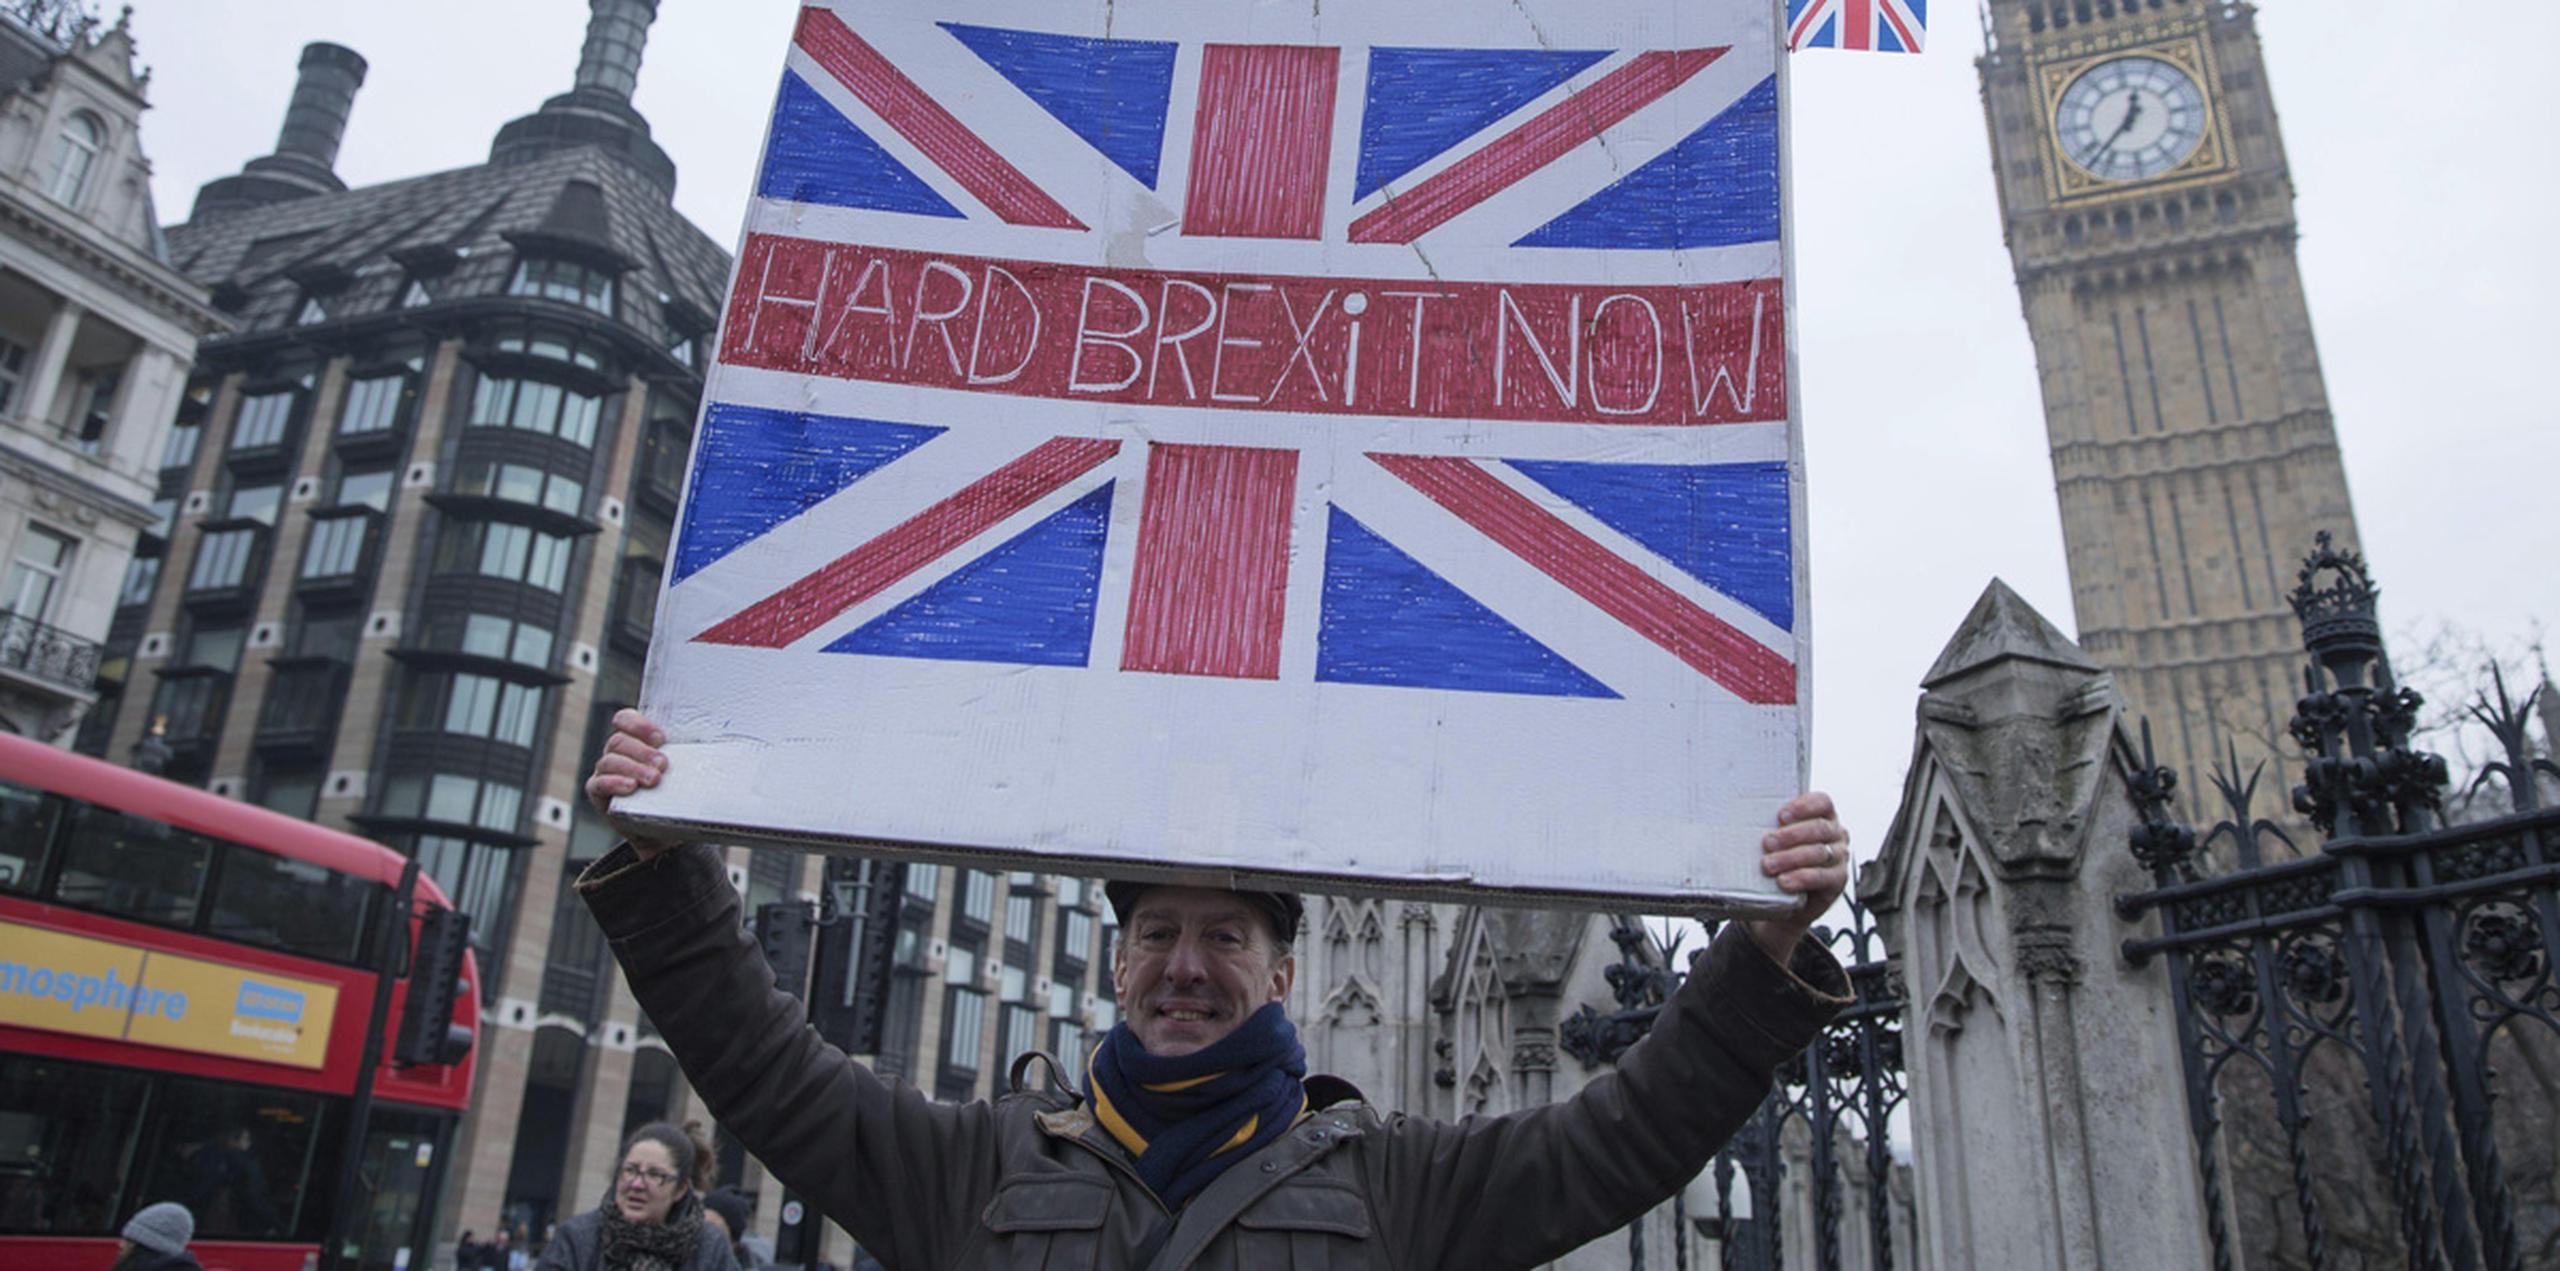 Varias personas participaron de una manifestación a favor del "brexit" en el Old Palace Yard, en Londres. El grupo reclamó que se detengan los intentos de frenar el proceso por el que Reino Unido pretende abandonar la Unión Europea. (EFE)